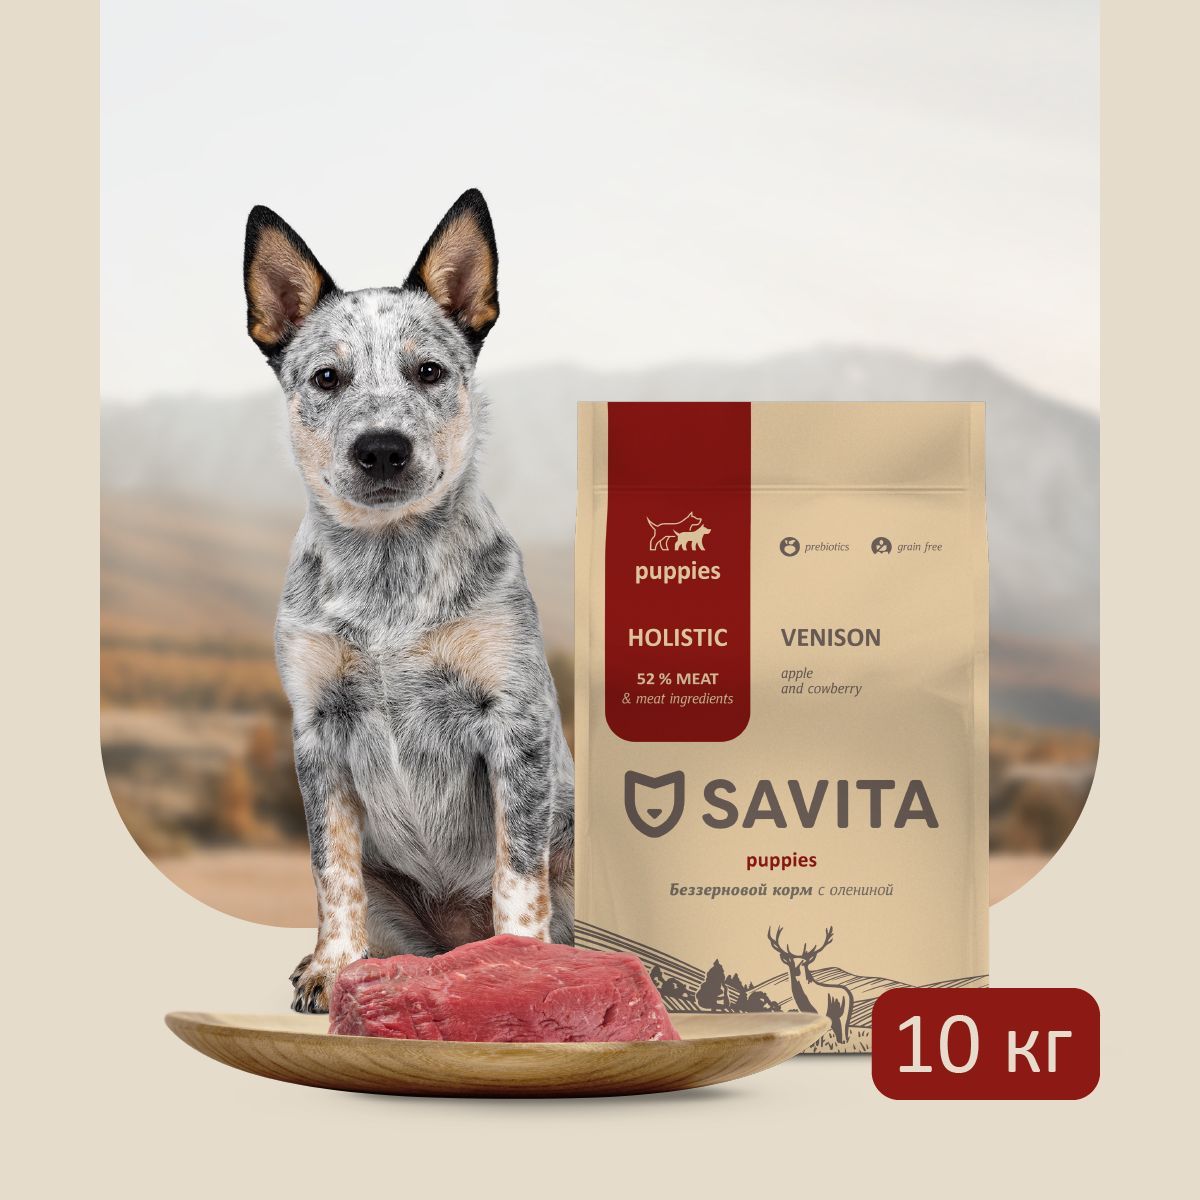 Савита корм. Савита корм для собак. Savita для щенков. Савита корм оленина.